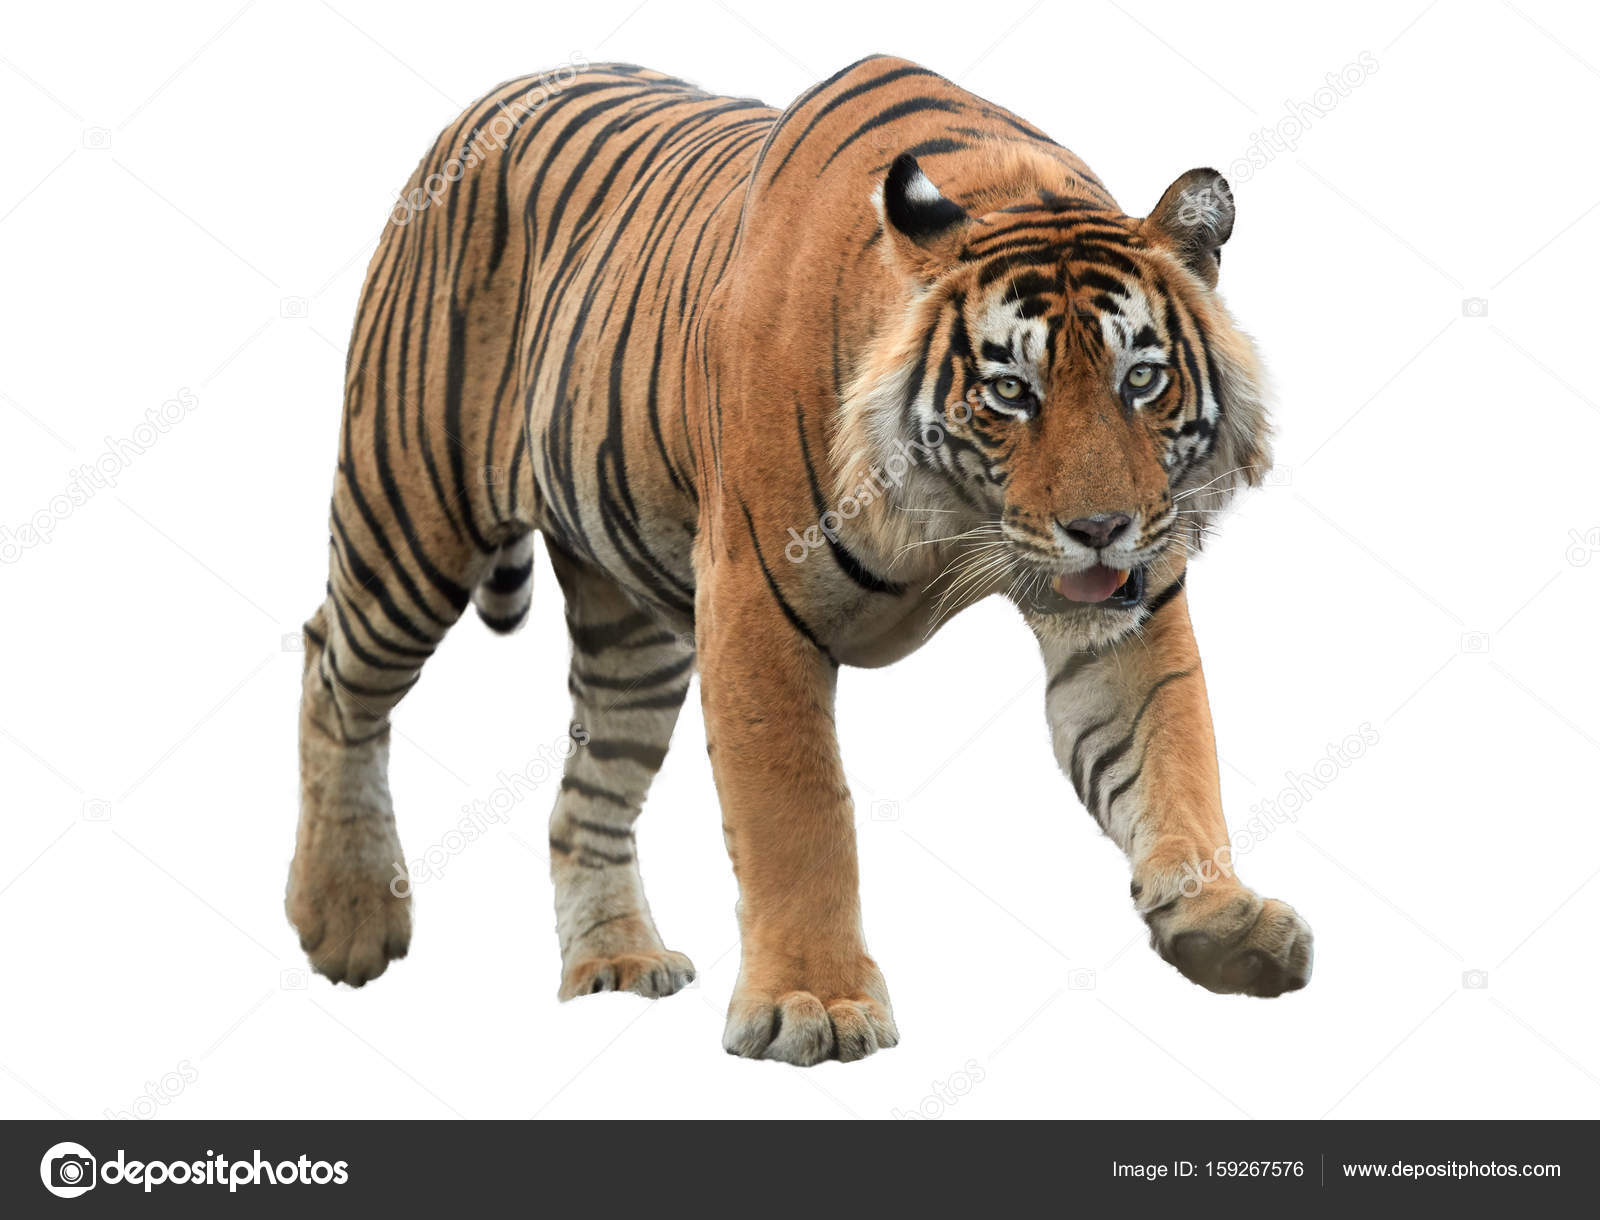 Nếu bạn đang thích thú với con hổ, thì chắc chắn bạn sẽ bị mê hoặc bởi loài hổ Bengal. Với lông tuyệt đẹp và khuôn mặt trông rất đáng yêu, loài hổ Bengal không chỉ là một trong những loài động vật nguy hiểm nhất, mà còn là một trong những loài động vật đáng yêu nhất trên địa cầu.